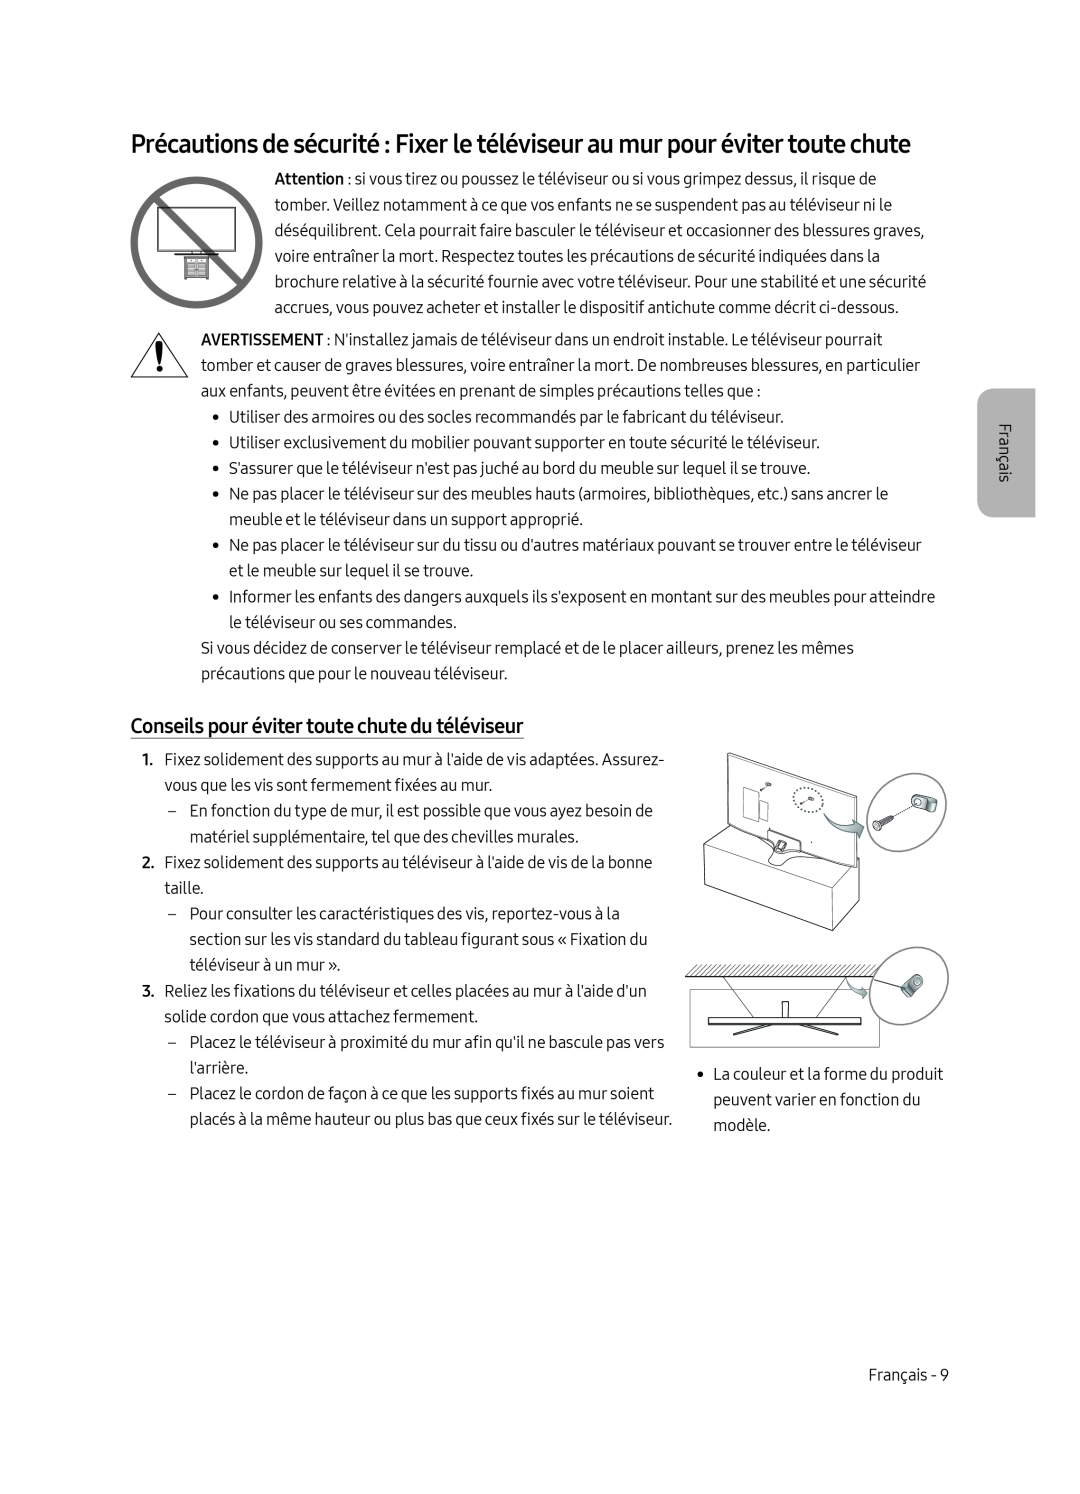 Samsung UE43MU6170UXZG, UE65MU6179UXZG, UE50MU6179UXZG, UE49MU6179UXZG manual Conseils pour éviter toute chute du téléviseur 